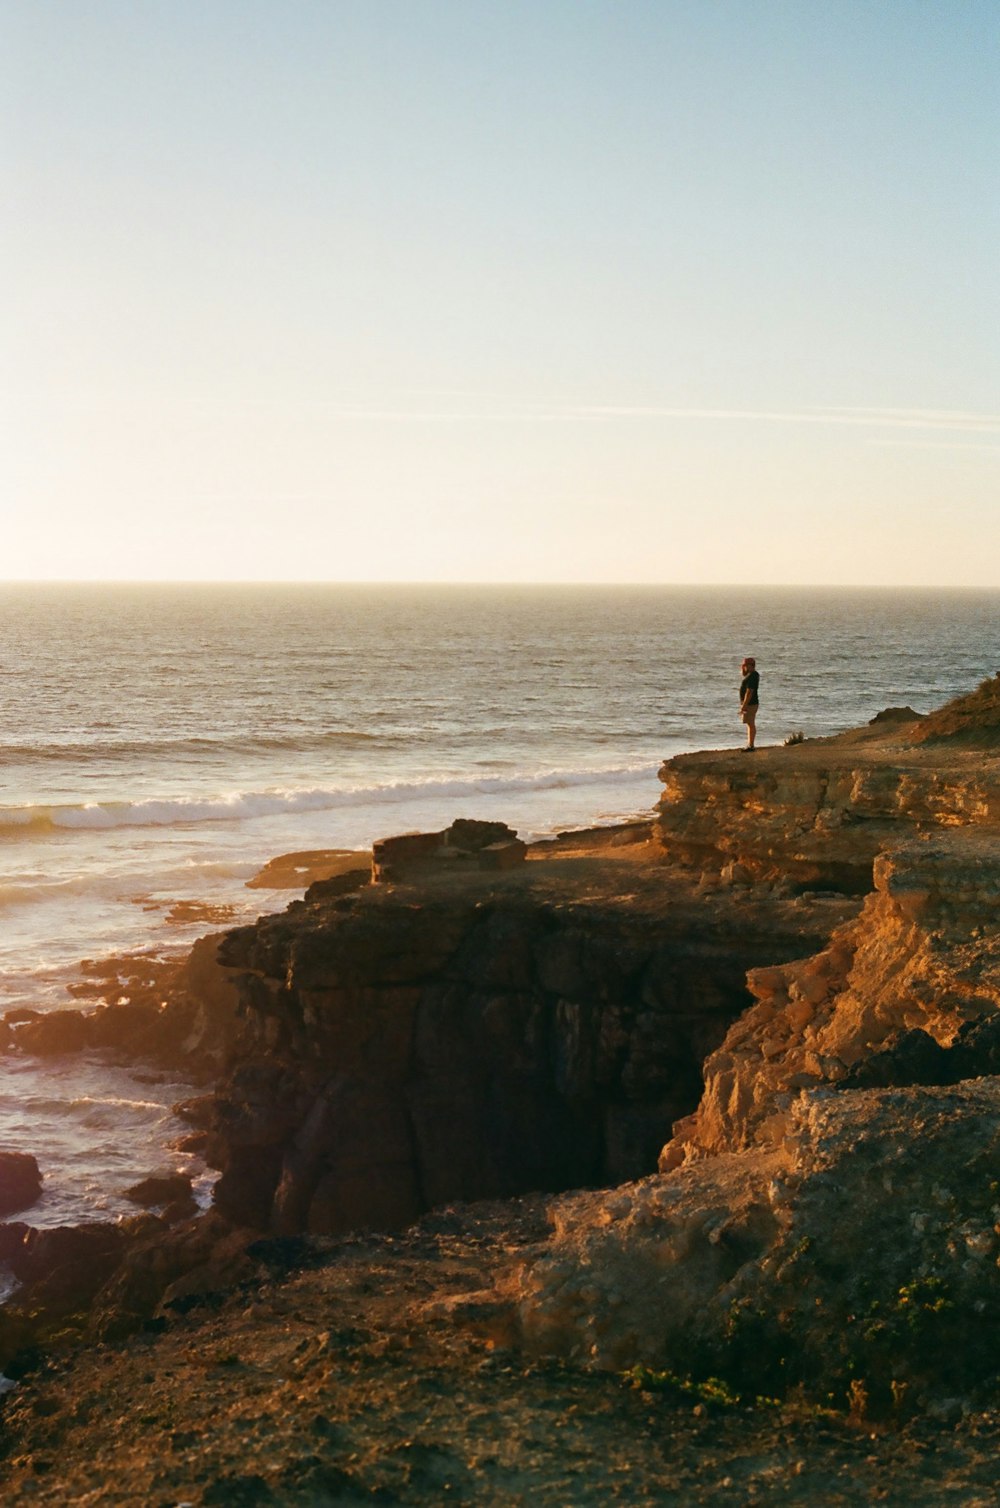 personne debout sur une formation rocheuse près de la mer pendant la journée